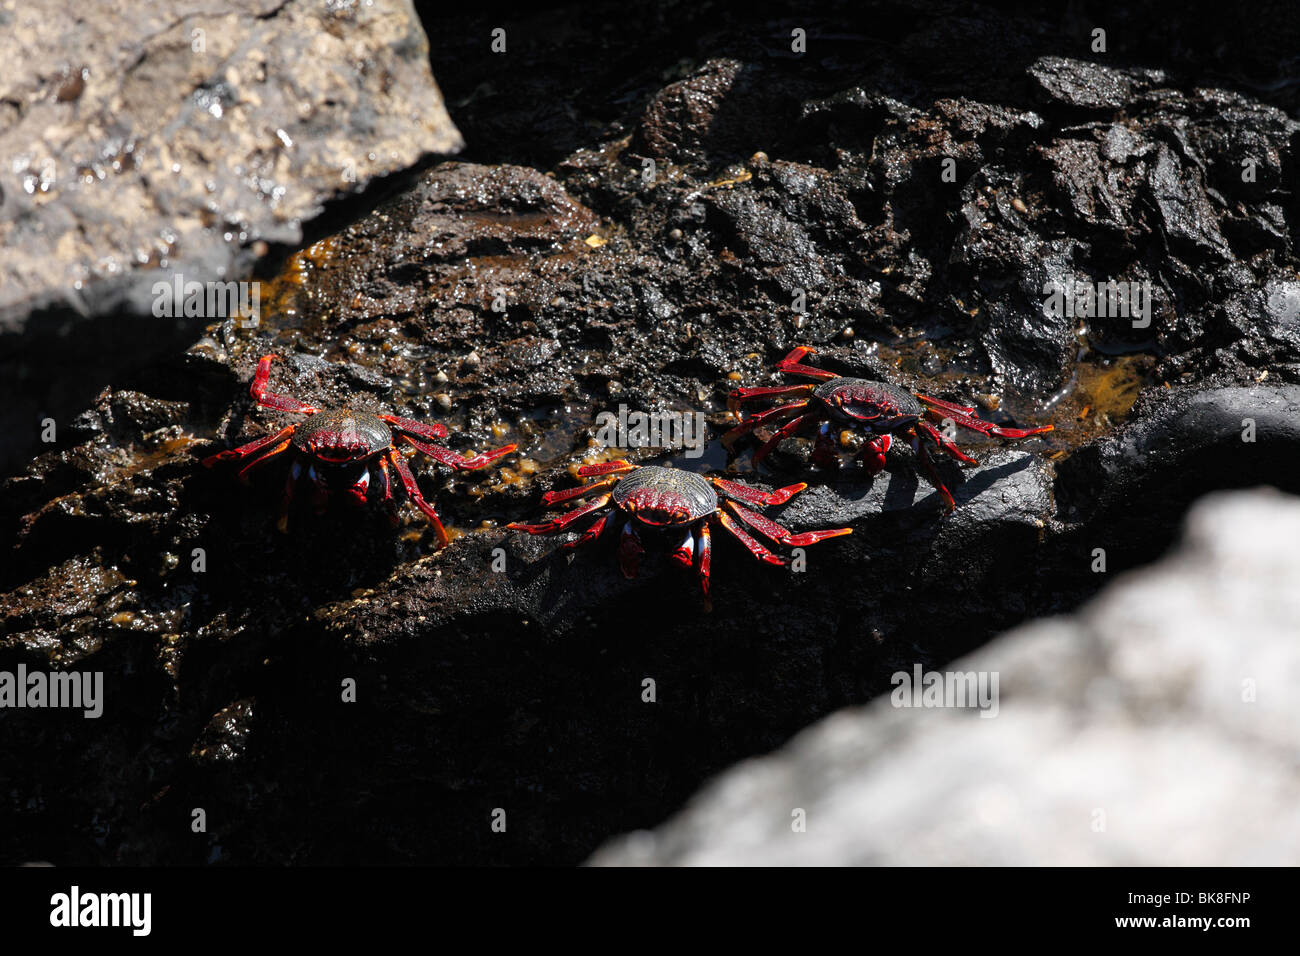 Les crabes rouges, La Palma, Canary Islands, Spain Banque D'Images